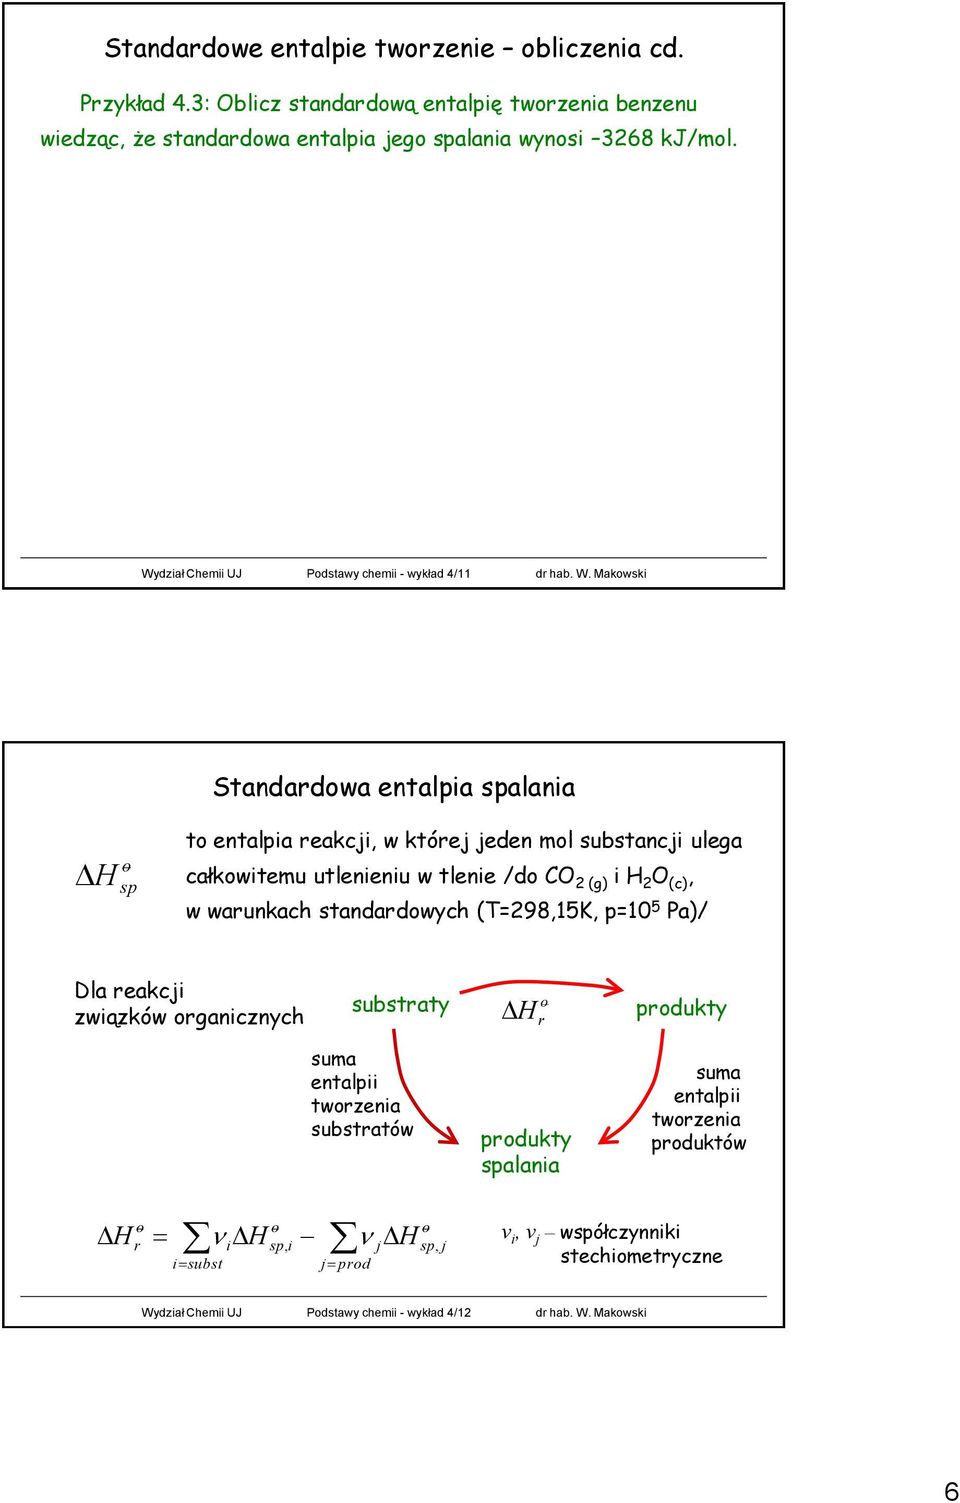 Makwski Standardwa entalpia spalania H sp t entalpia reakcji, w której jeden ml substancji ulega całkwitemu utlenieniu w tlenie /d CO 2 (g) i H 2 O (c), w warunkach